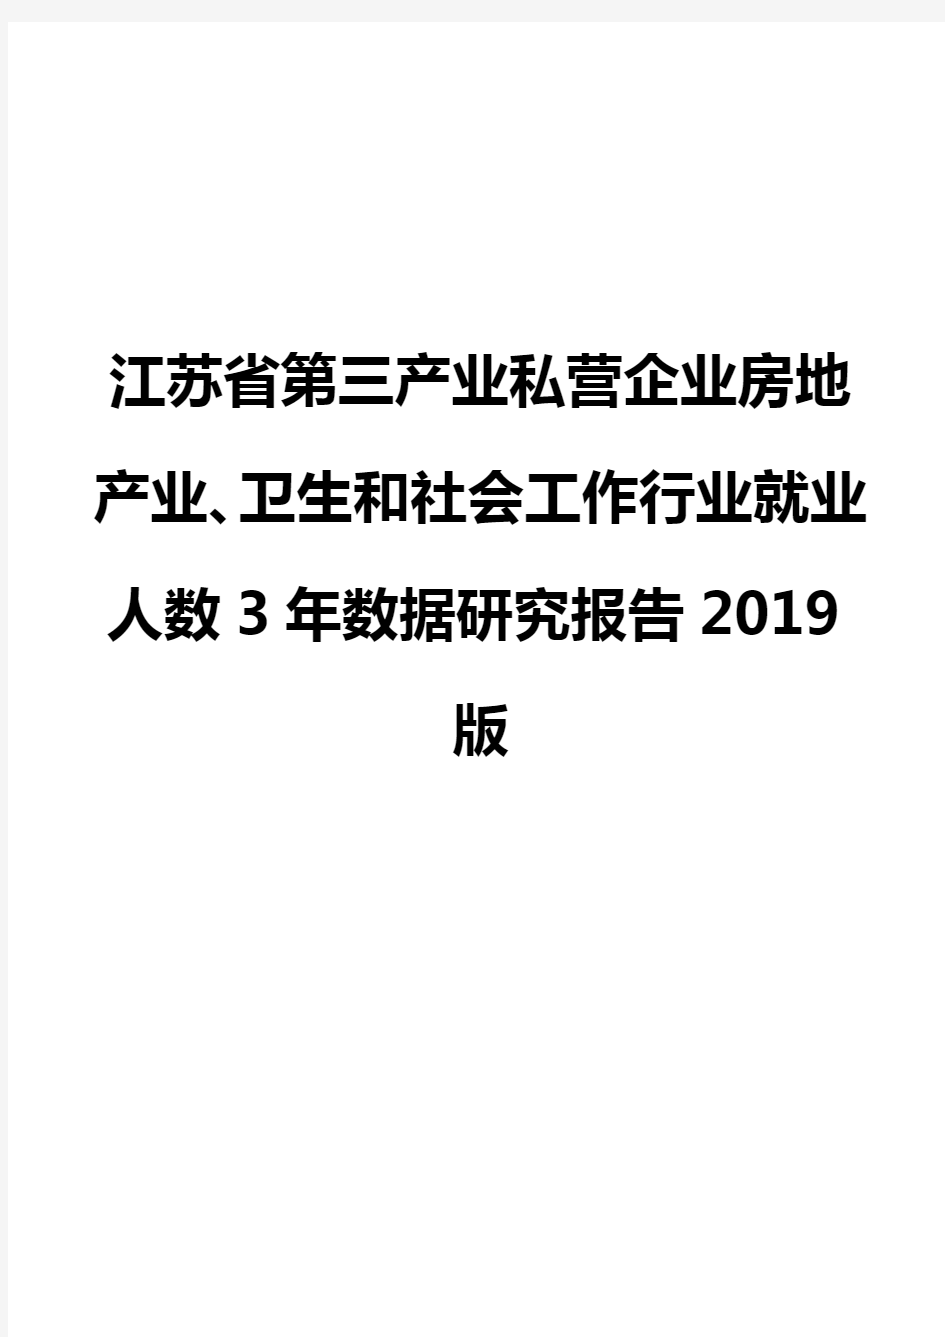 江苏省第三产业私营企业房地产业、卫生和社会工作行业就业人数3年数据研究报告2019版